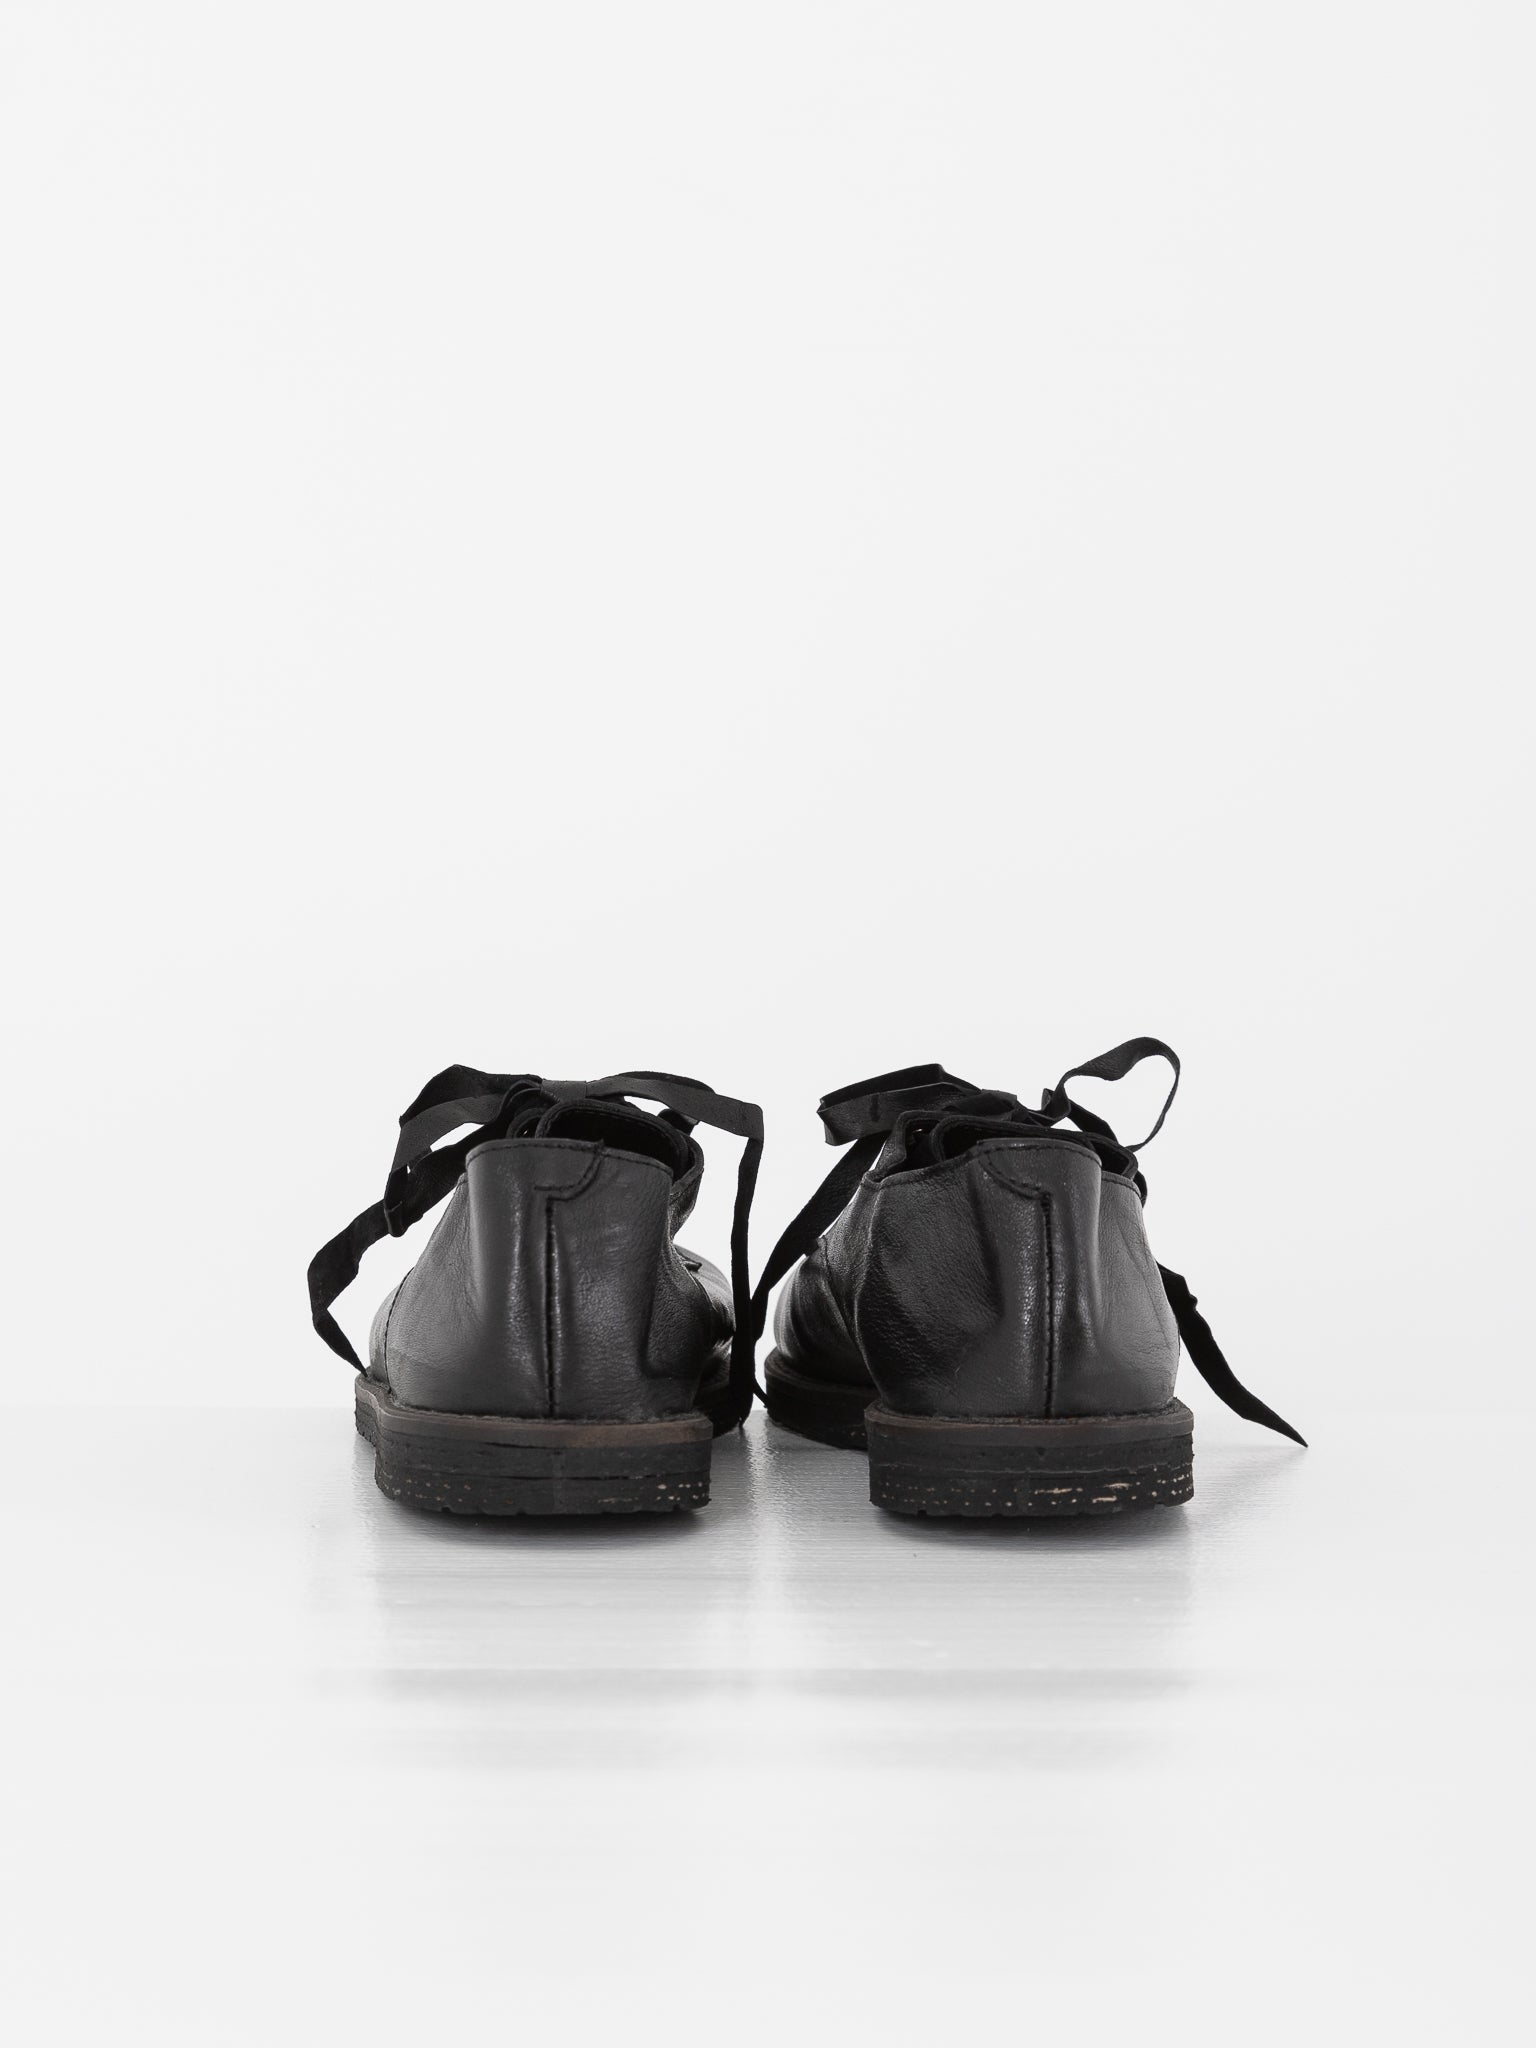 Atelier Inscrire Luis Tie Shoe, Black - Worthwhile, Inc.